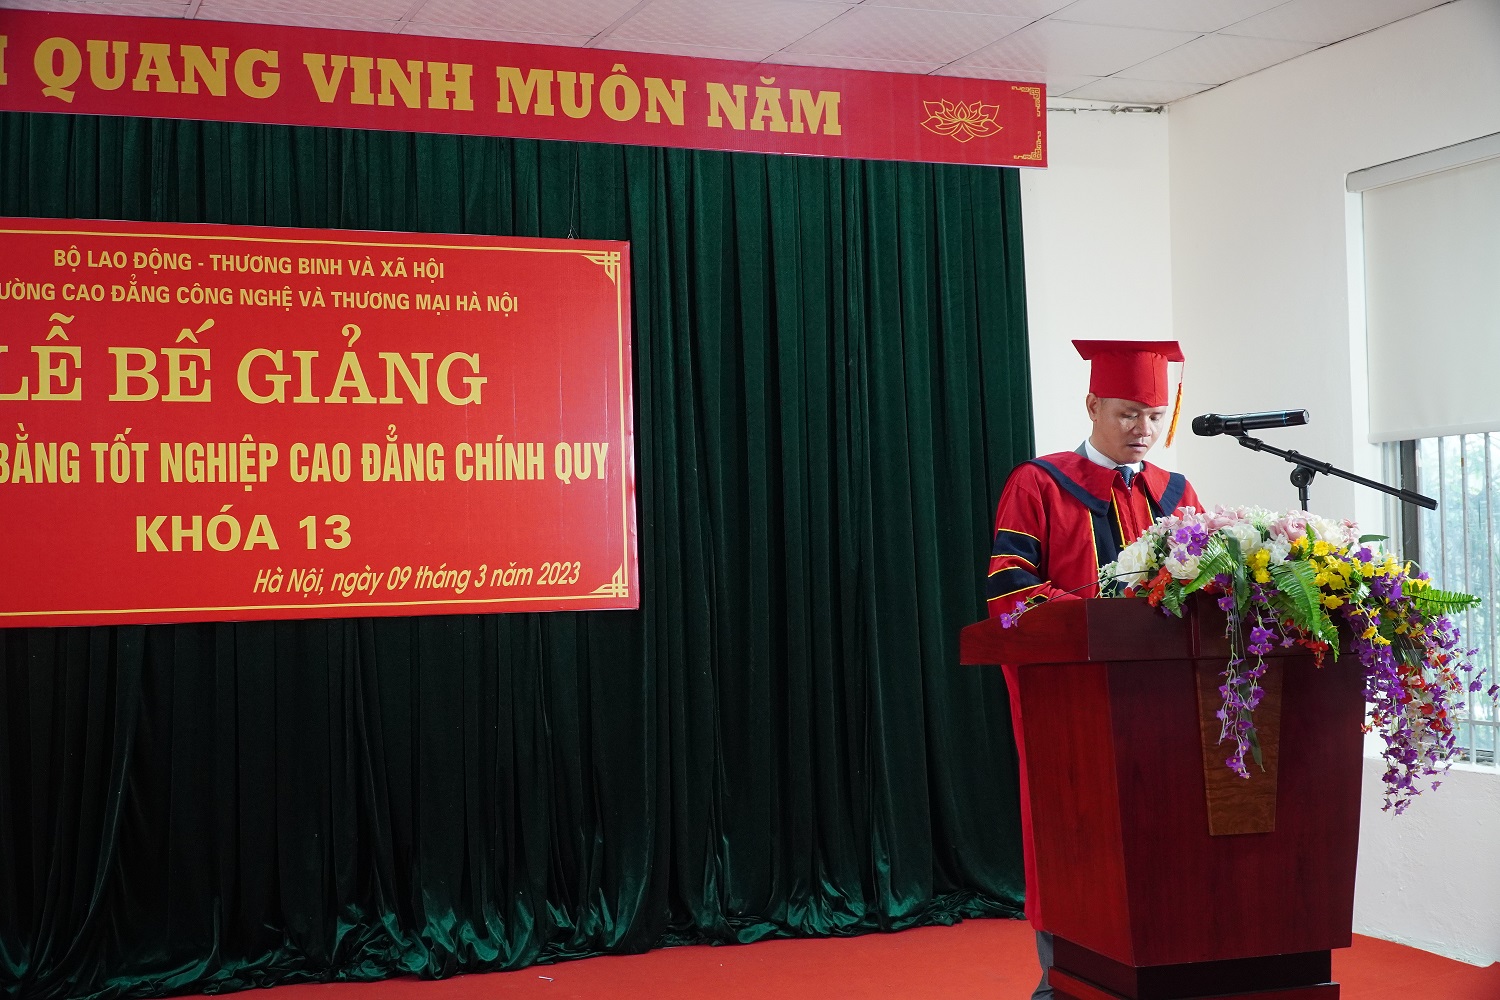 TS. Nguyễn Xuân Sang - Hiệu trưởng Nhà trường phát biểu tại Lễ bế giảng và trao bằng tốt nghiệp Cao đẳng chính quy Khóa 13